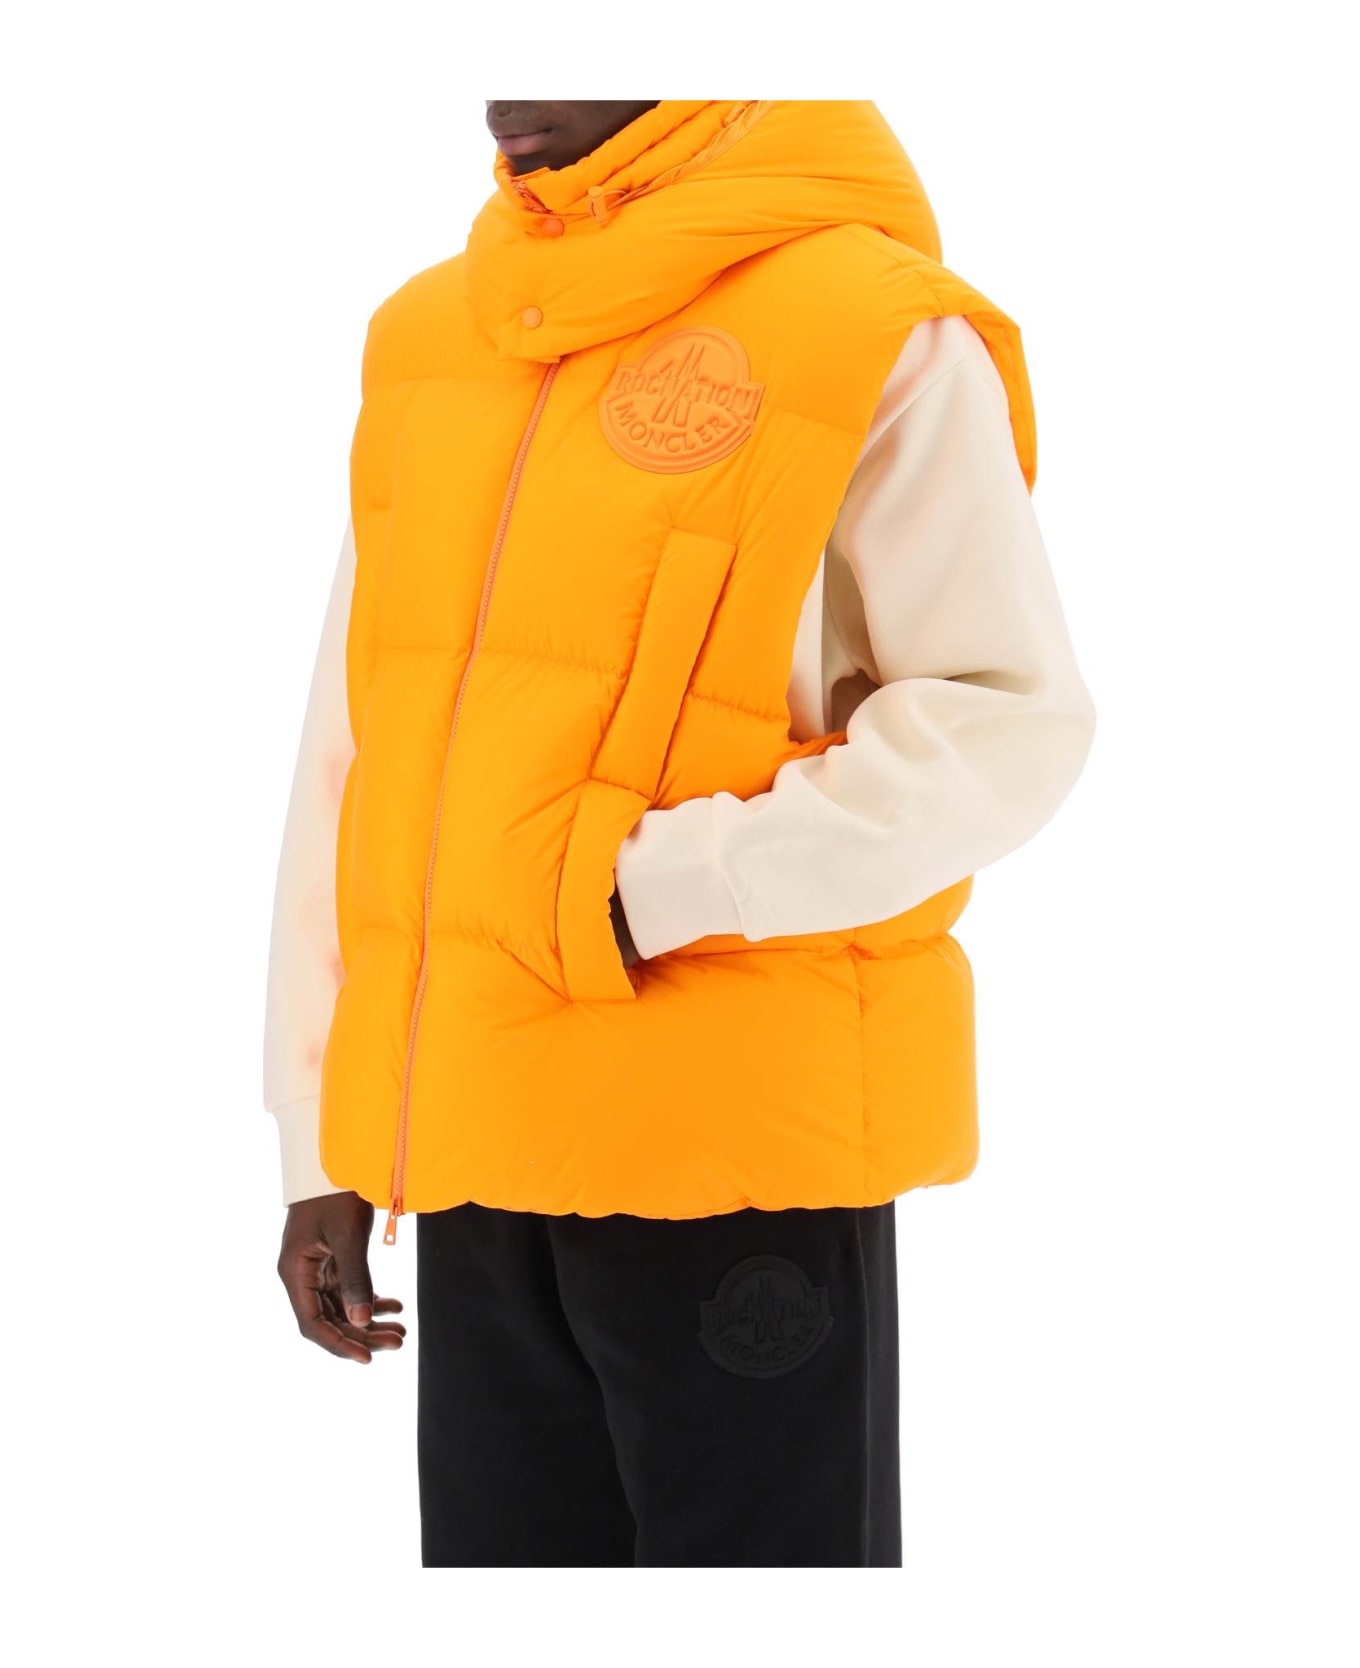 Moncler Genius Apus Puffer Vest - Orange